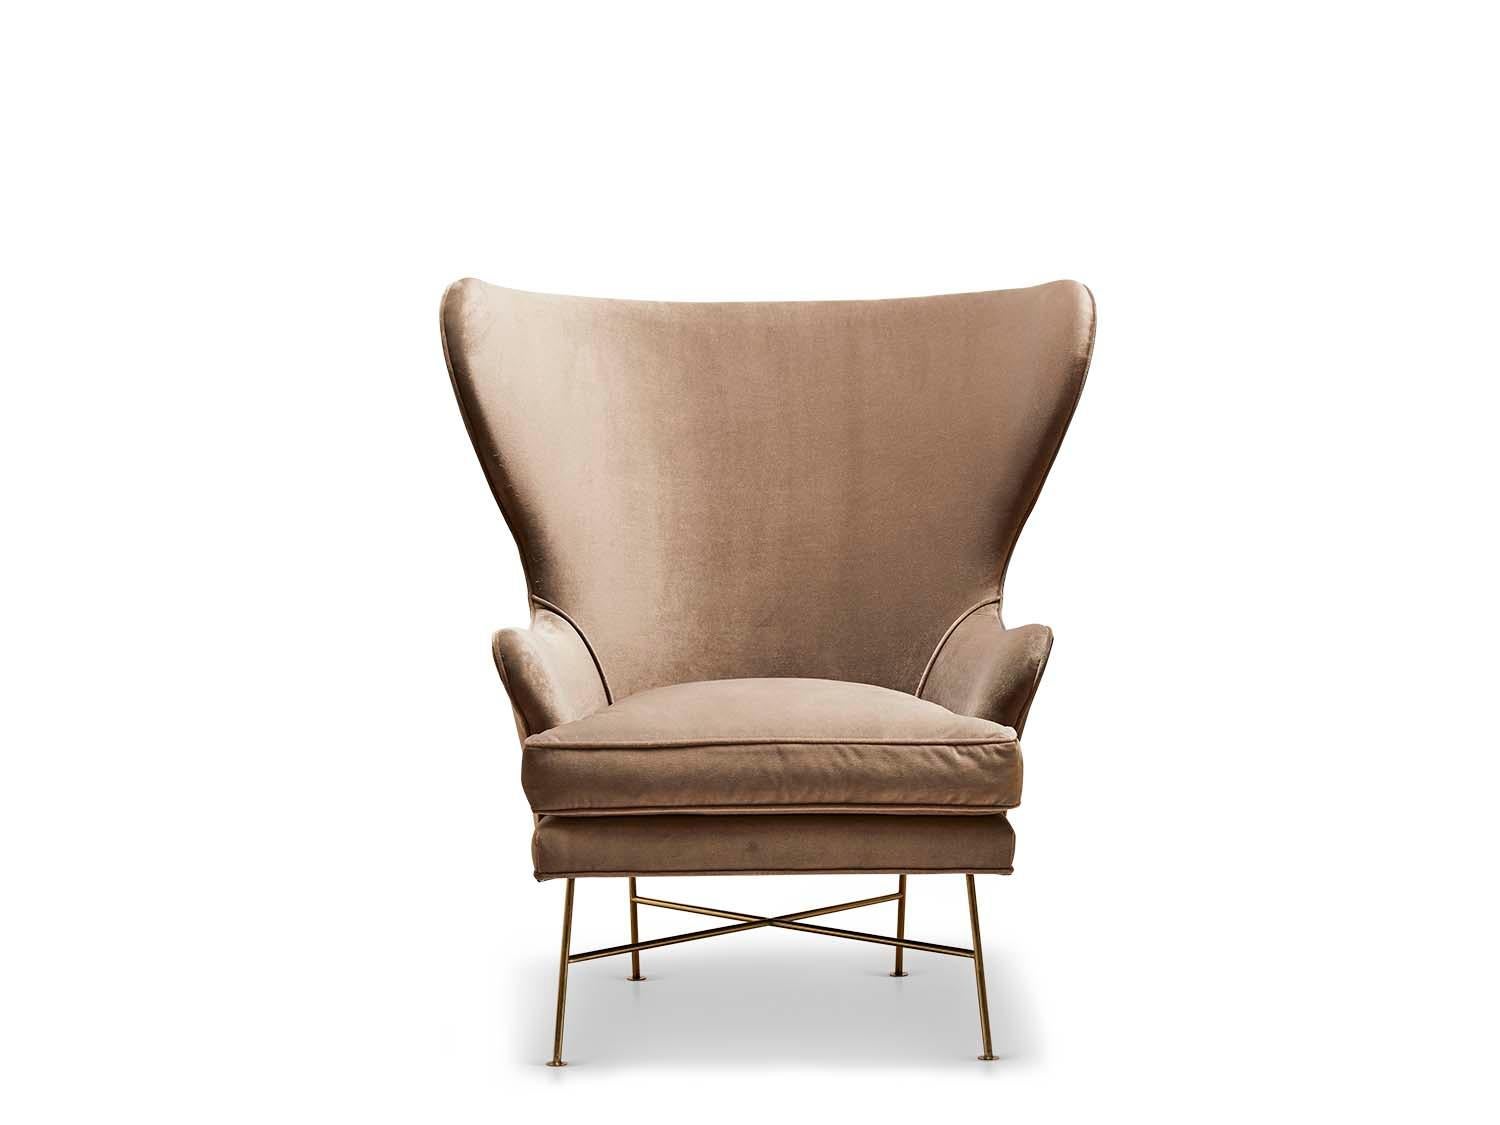 Der Highland Wingback Chair ist ein skulpturaler, breiter Stuhl mit minimalem Metallgestell und daunengepolstertem Sitzkissen.

 Die Lawson-Fenning Kollektion wird in Los Angeles, Kalifornien, entworfen und handgefertigt. Wenden Sie sich an uns, um